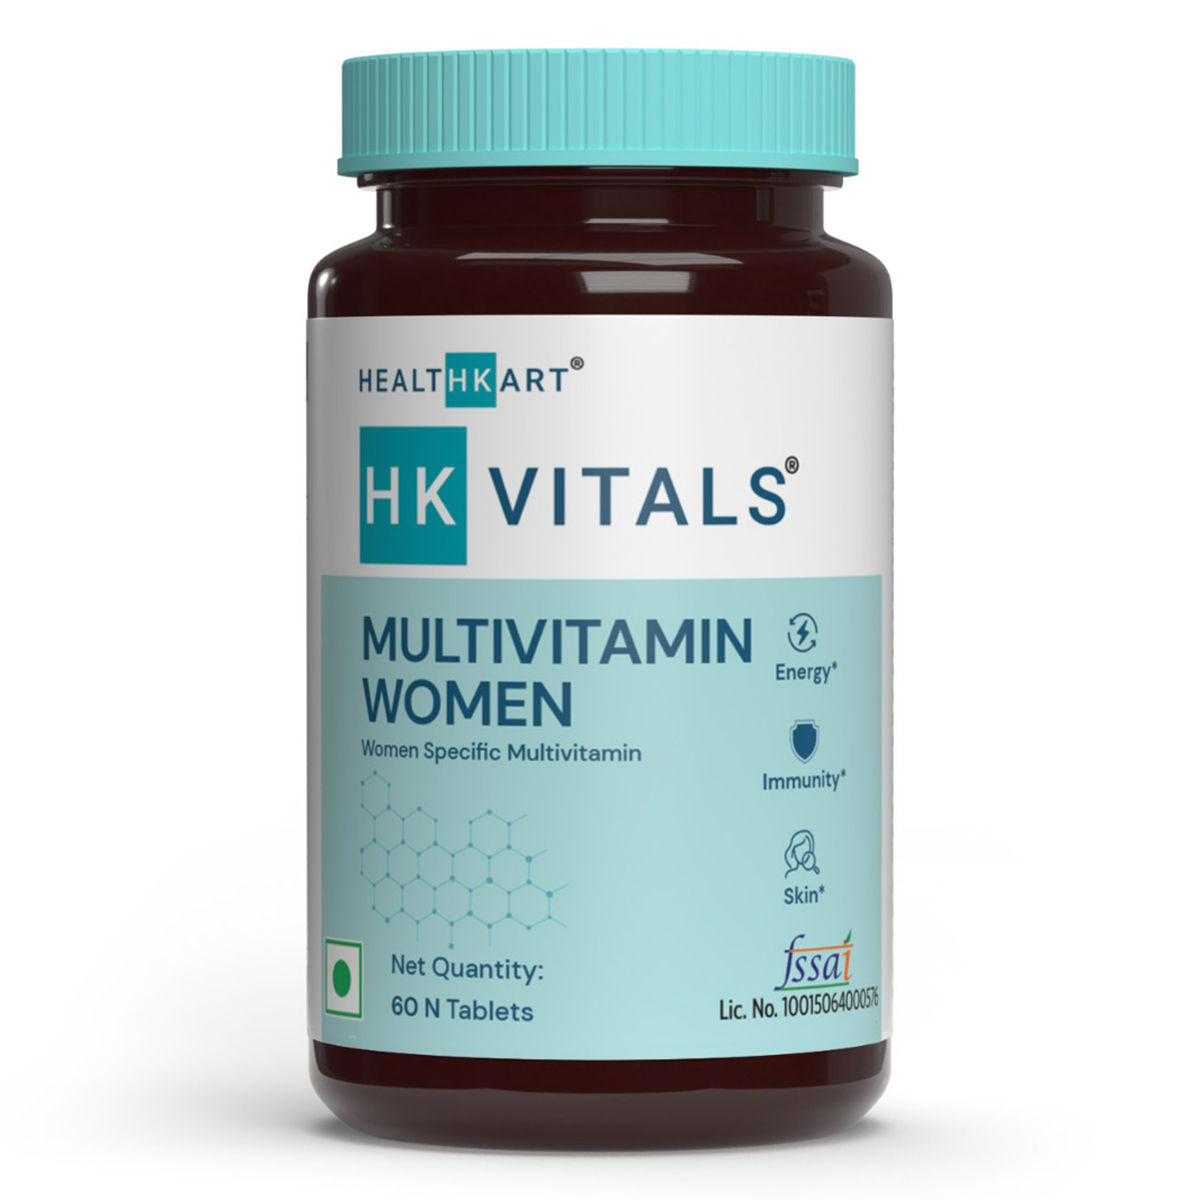 Buy HealthKart HK Vitals Multivitamin Women, 60 Tablets Online